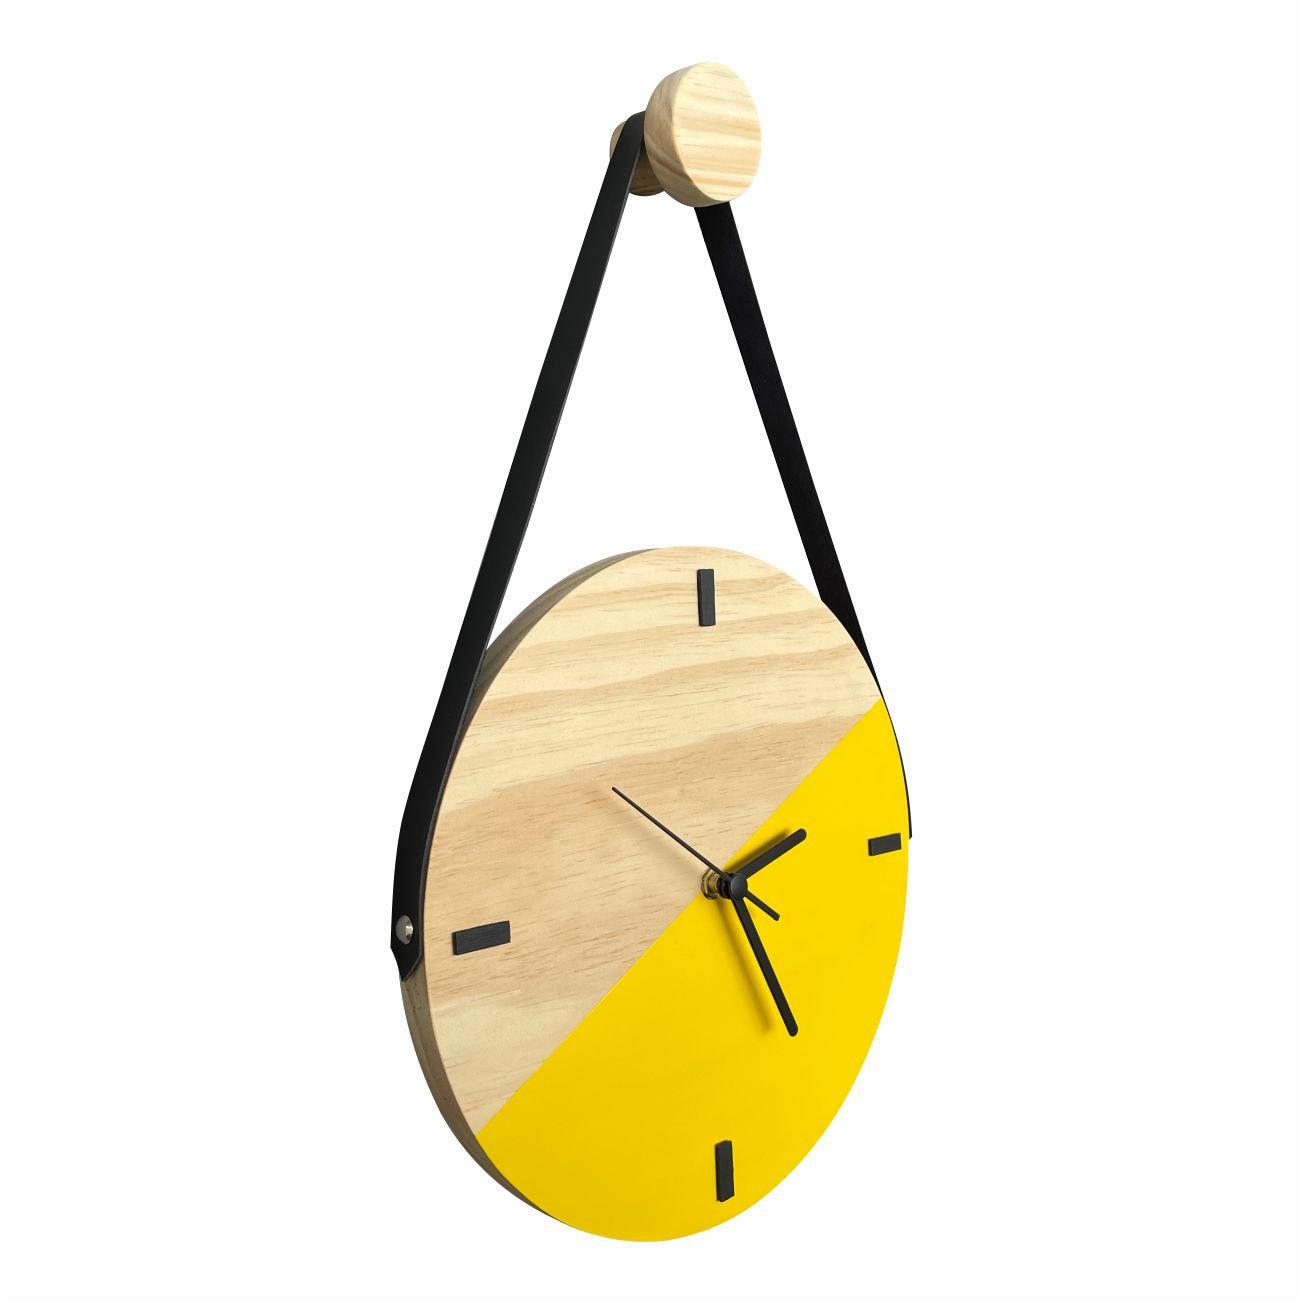 Relógio Decorativo Edward Clock Escandinavo Amarelo com Alça - 3